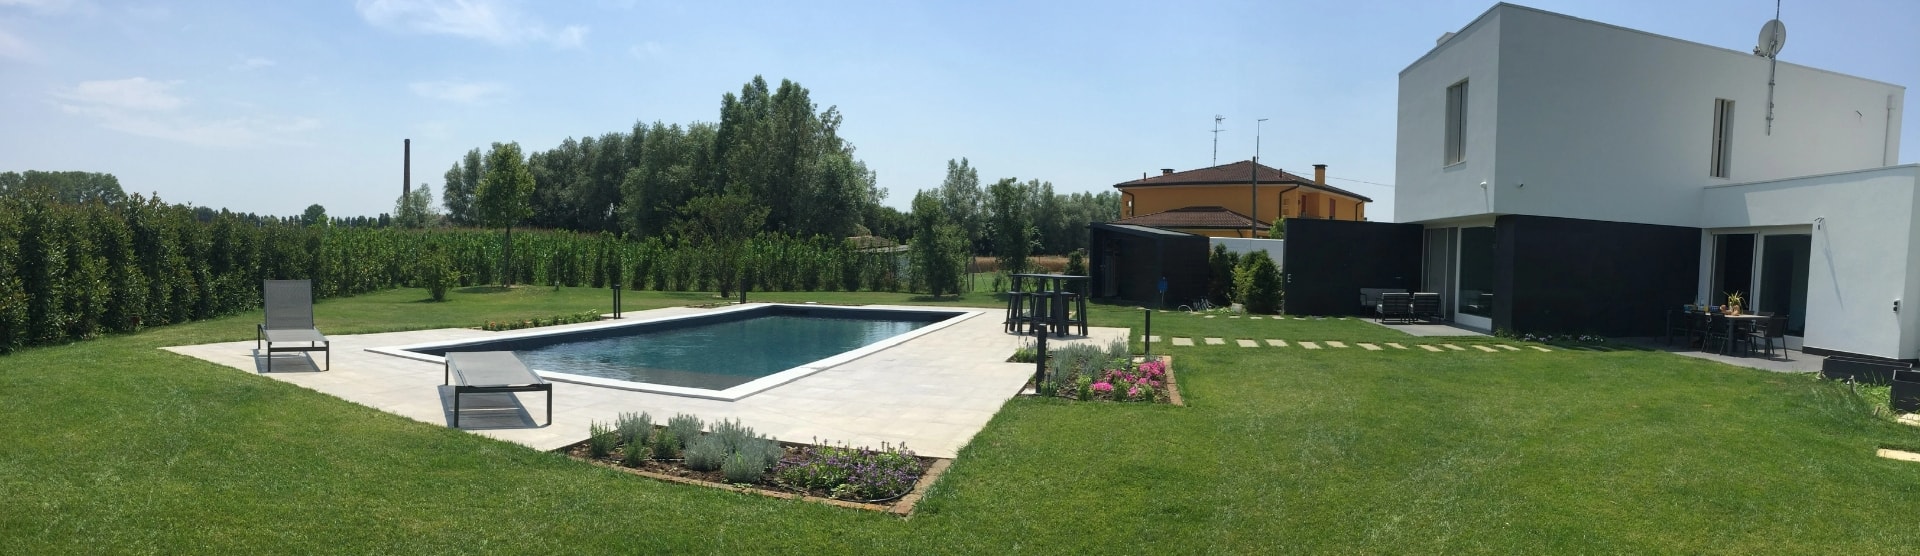 Progettazione e realizzazione piscine Ferrara Rovigo